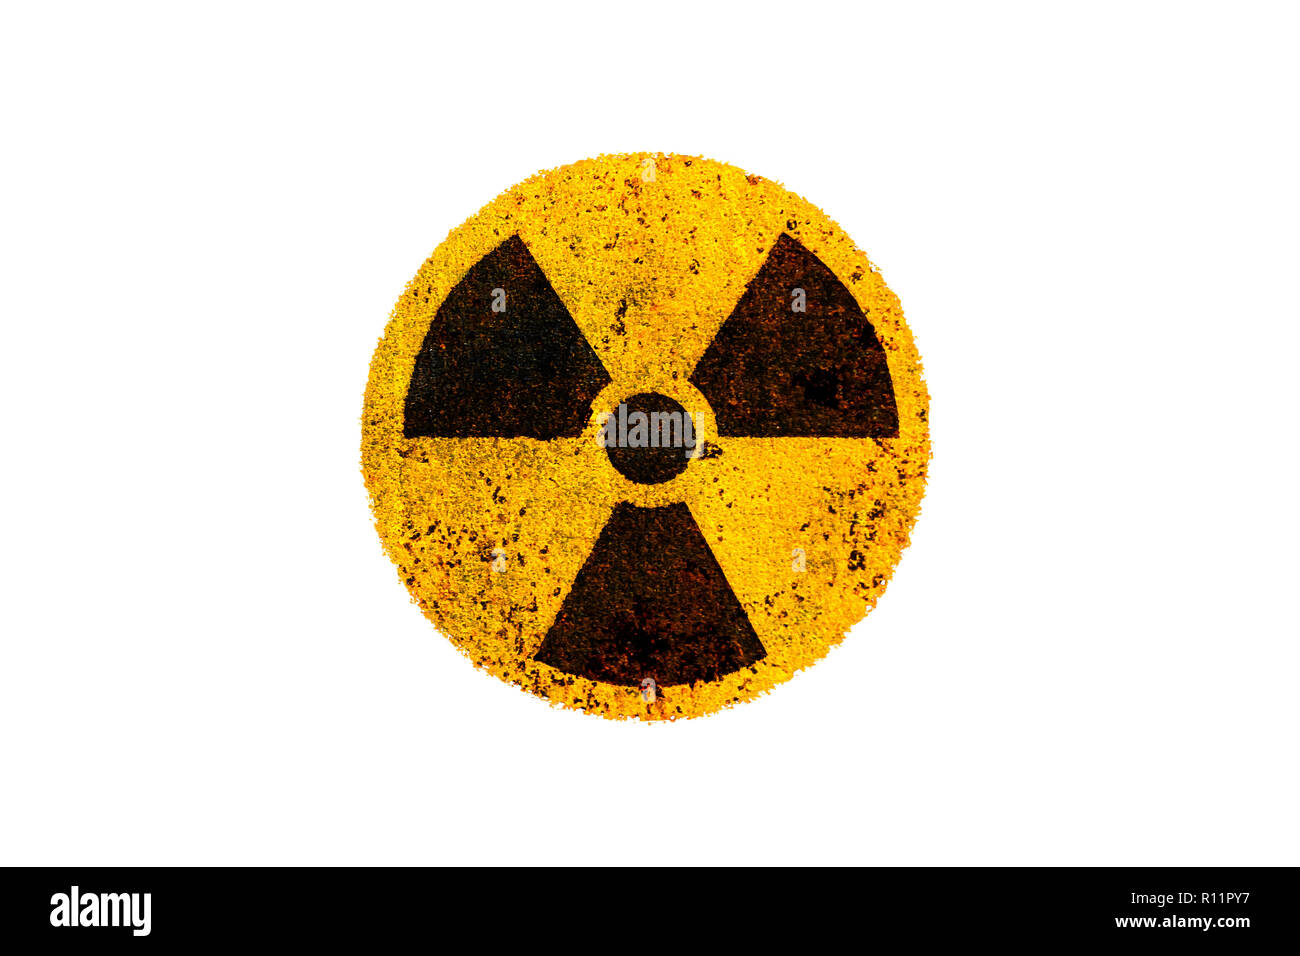 Runde gelbe und schwarze Radioaktivität (ionisierende Strahlung) nukleare Gefahr Symbol auf rostiges Metall grungy Textur und isoliert auf weißem Hintergrund. Stockfoto